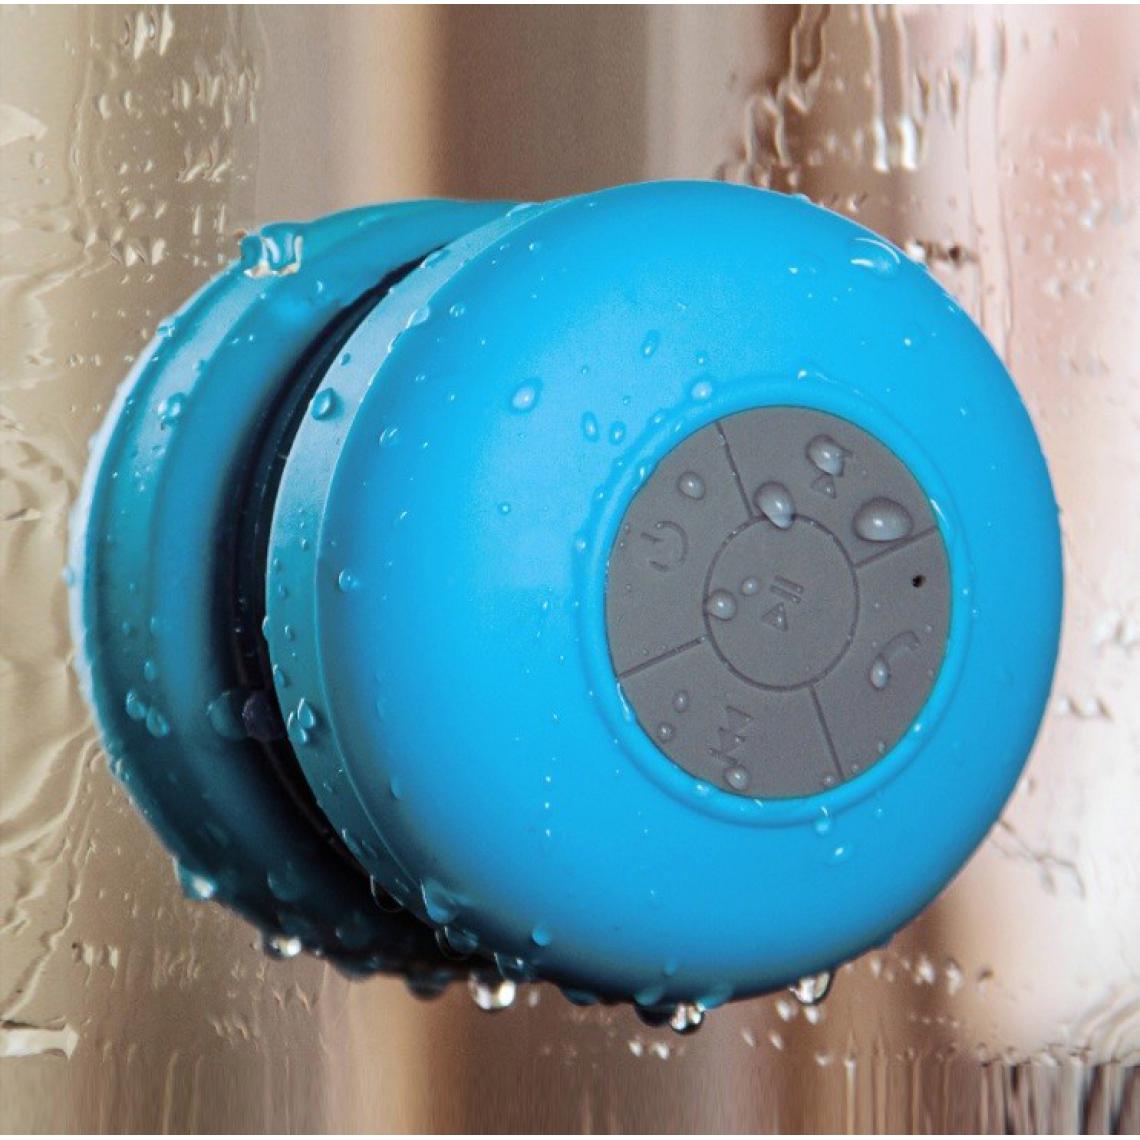 Shot - Enceinte Waterproof Bluetooth pour ONEPLUS 8 Smartphone Ventouse Haut-Parleur Micro Douche Petite (BLEU) - Autres accessoires smartphone